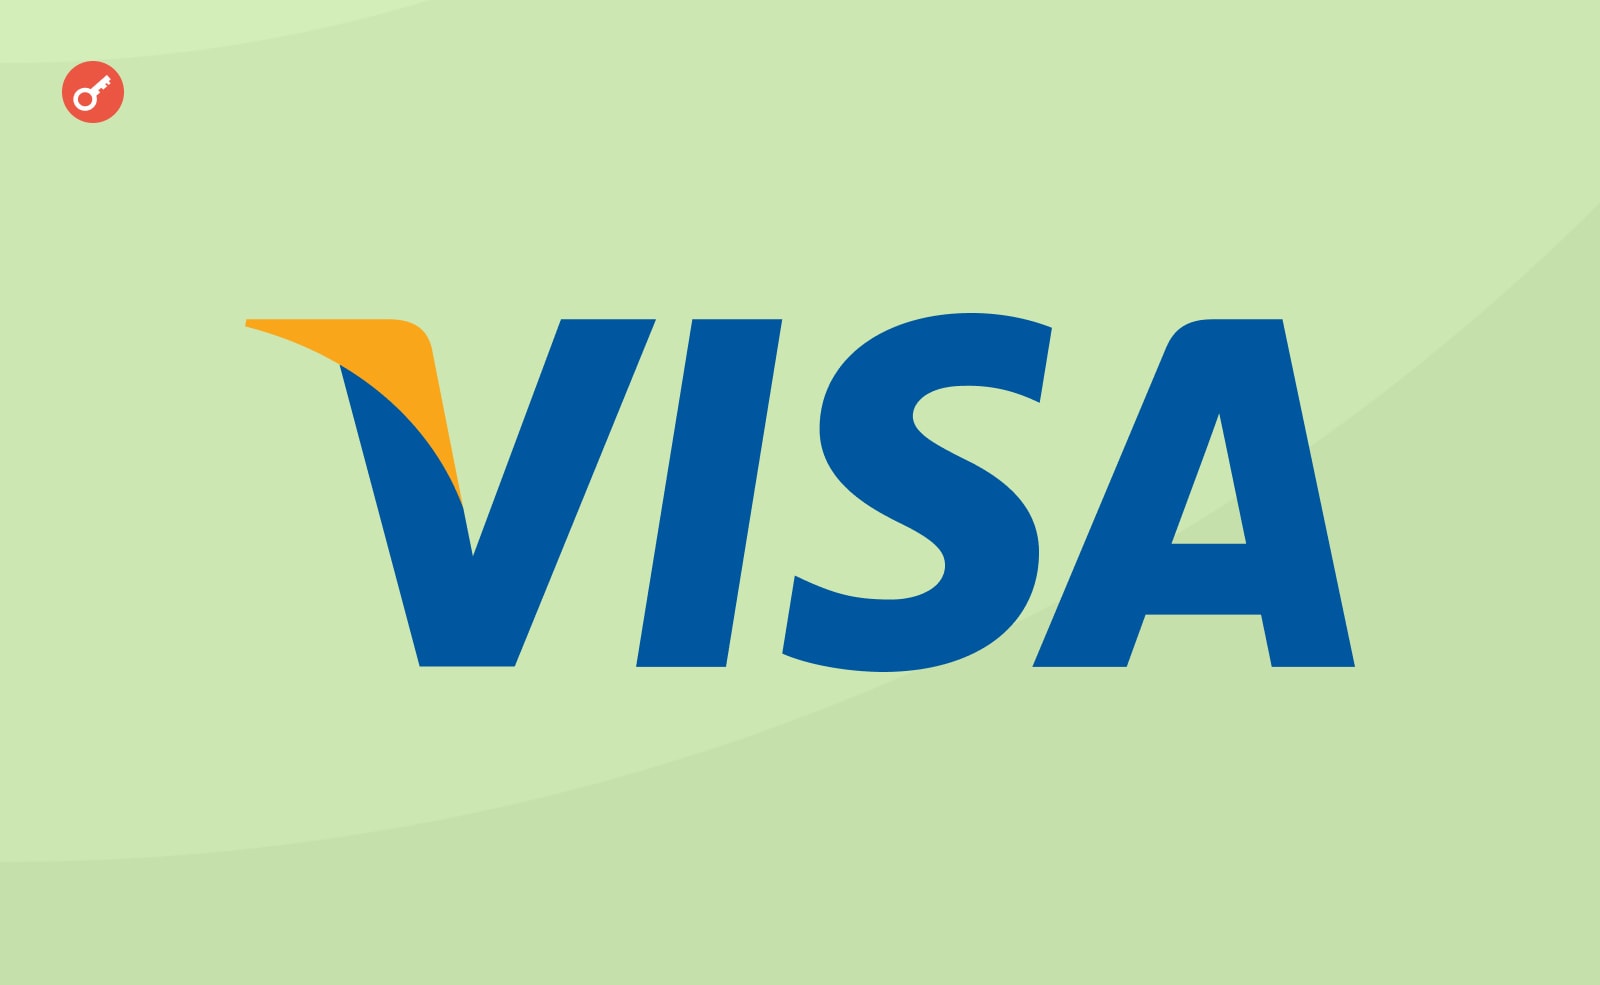 Visa продовжить впровадження блокчейн-рішень і CBDC. Головний колаж новини.